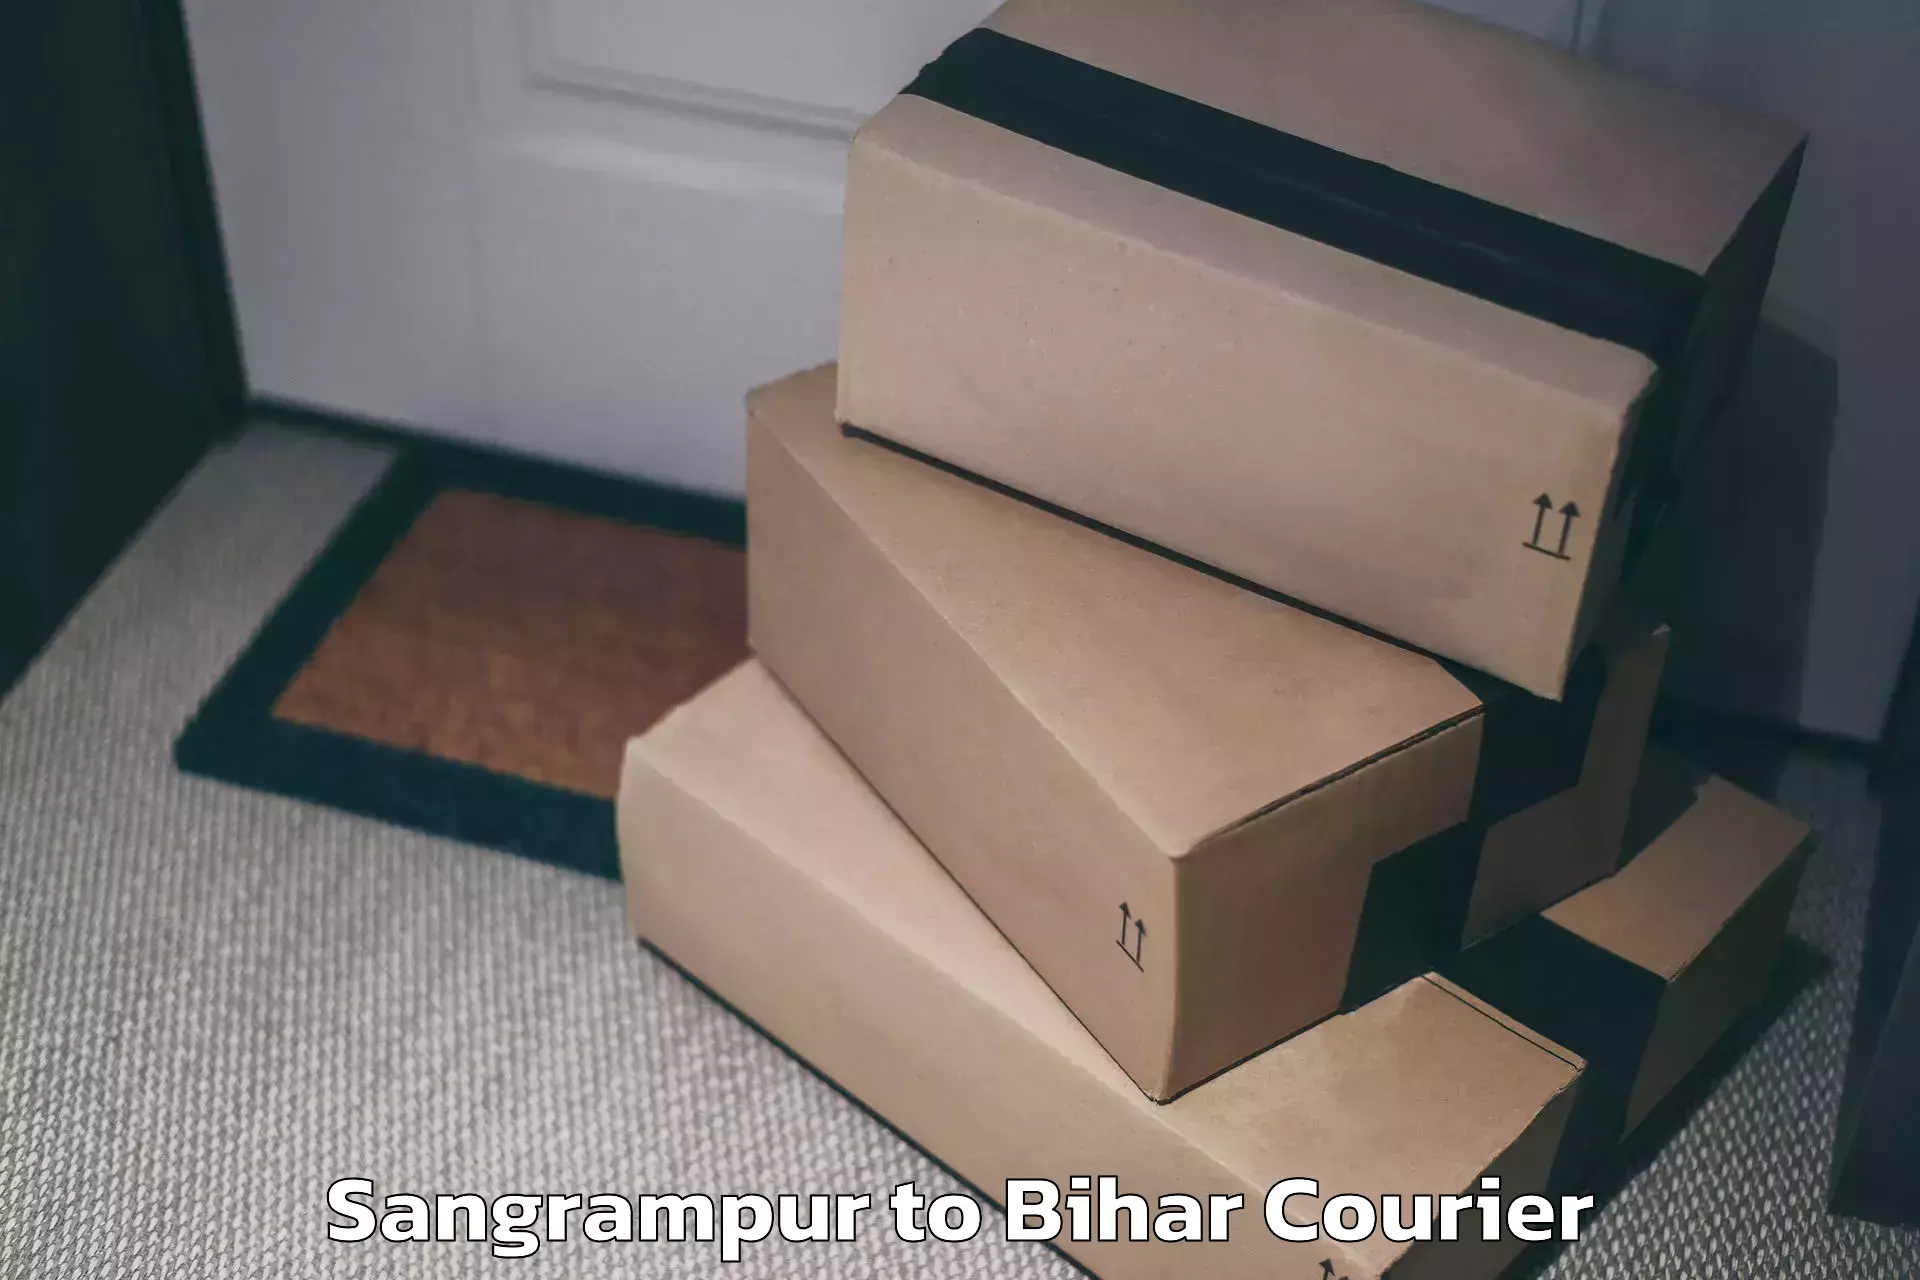 Hassle-free luggage shipping Sangrampur to Dumraon